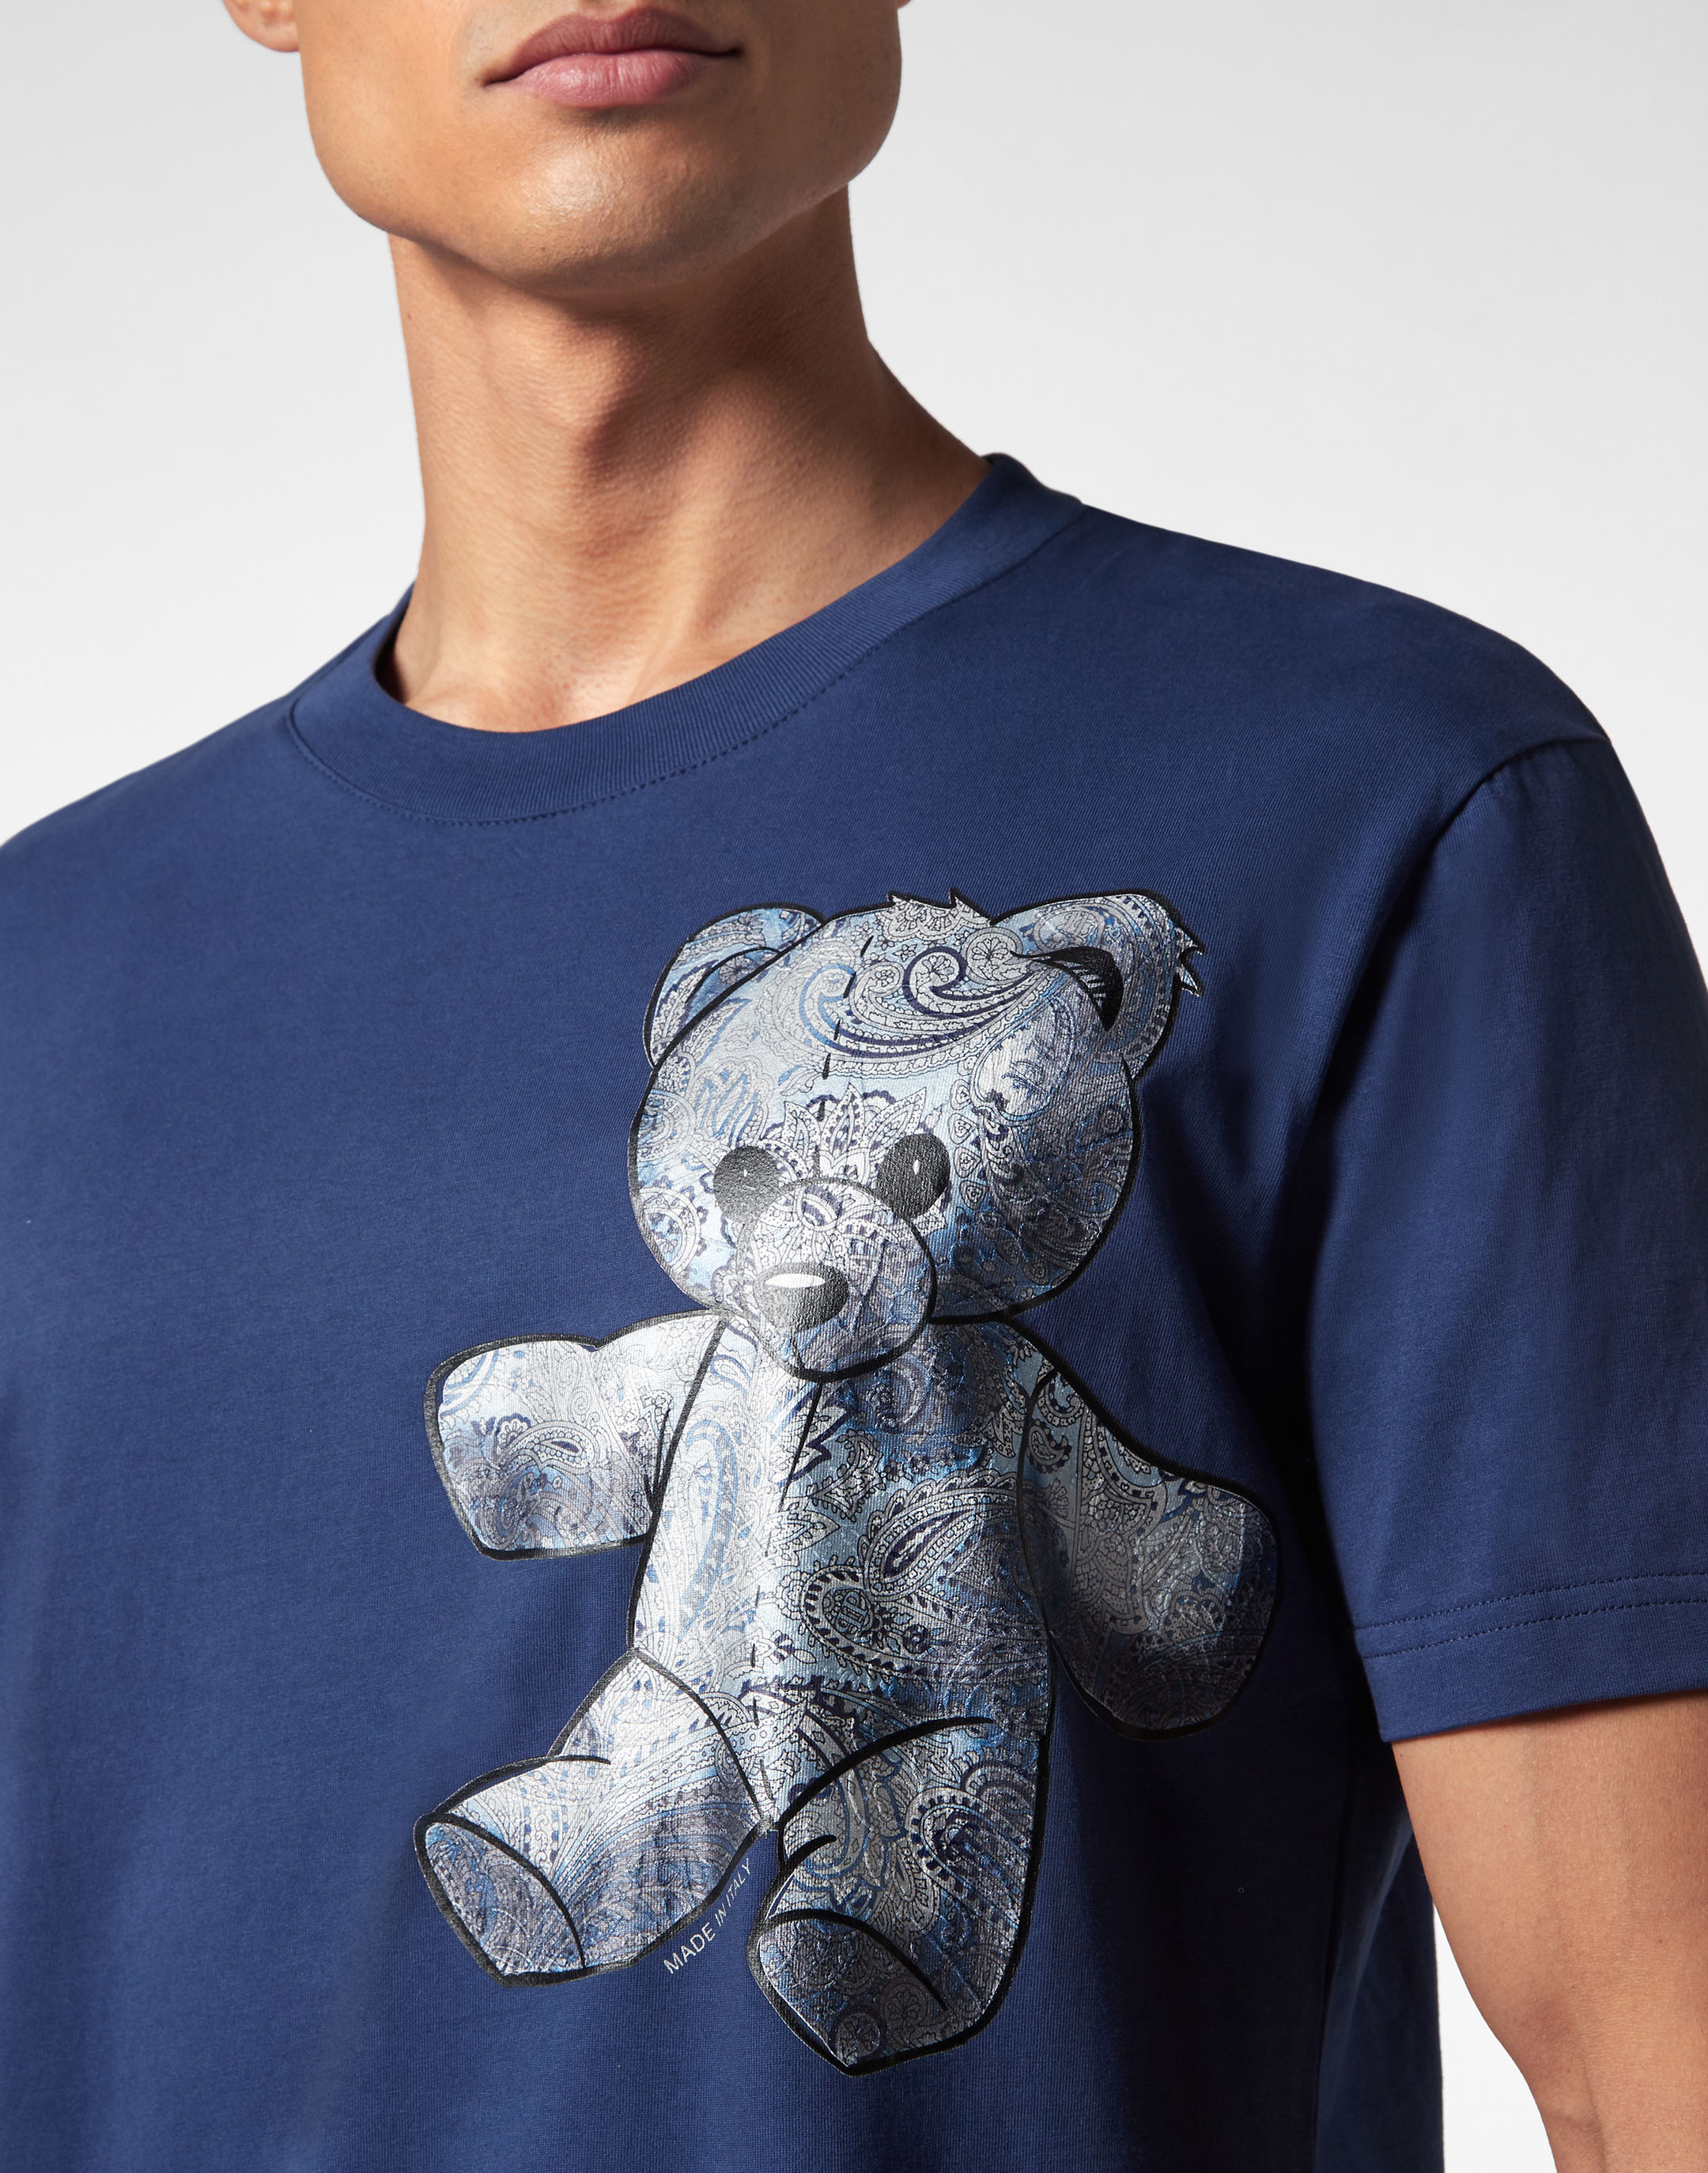 lv teddy bear shirt